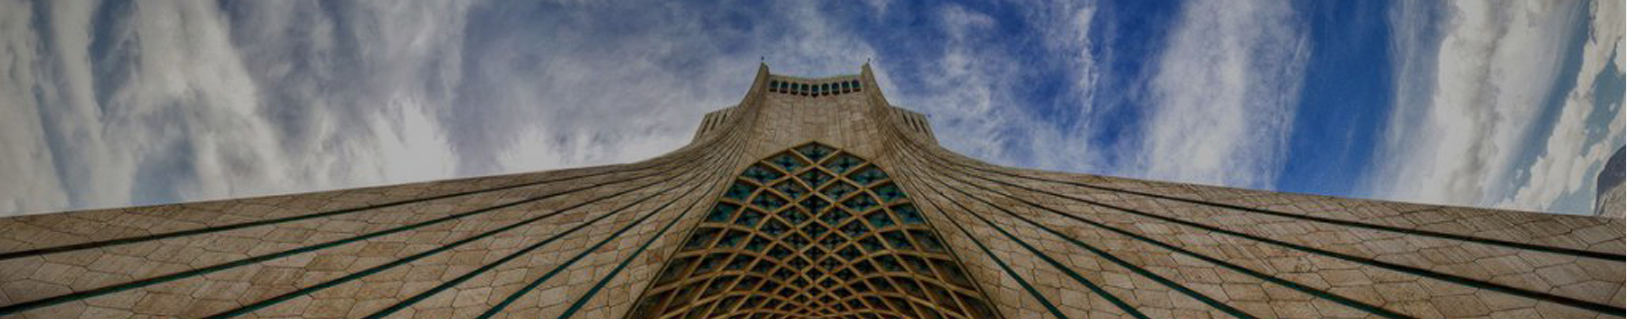 Introducing Azadi Tower